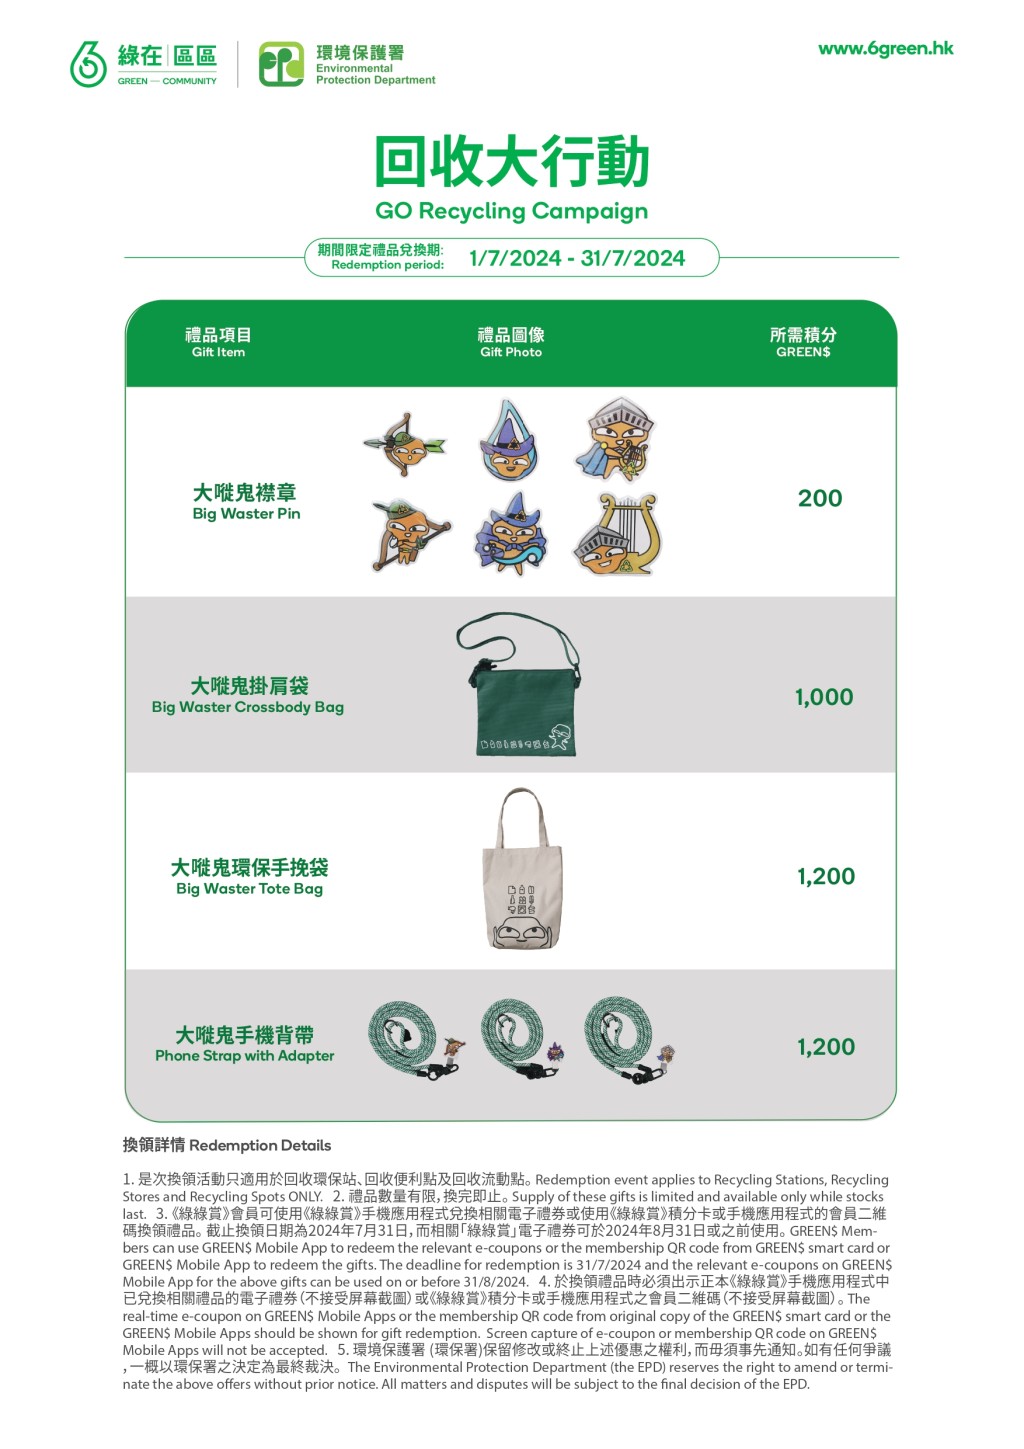 环保署在7月1日至31日推出以「大嘥鬼」为主题的期间限定礼品供市民换领。「香港减废网站」截图